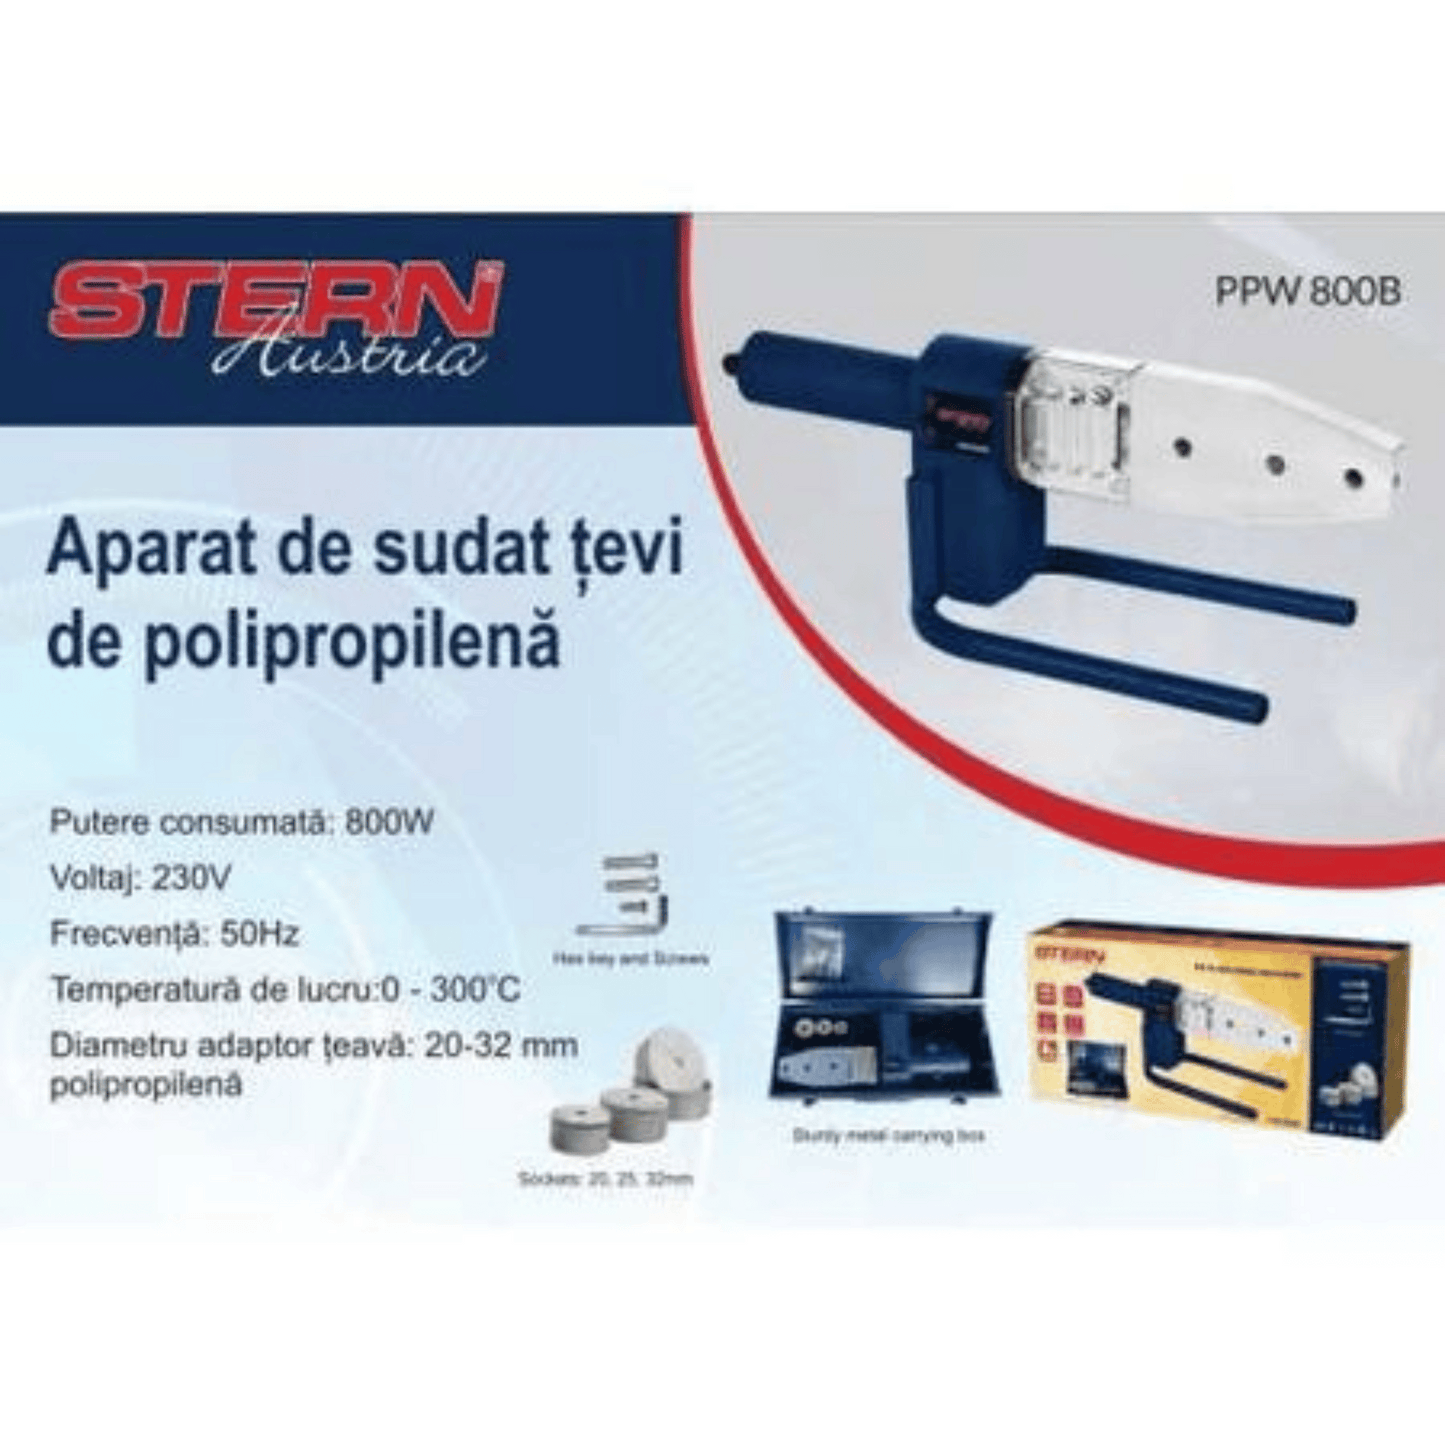 Stern Austria - PVC Pipe Welding Machine - PPW1000C